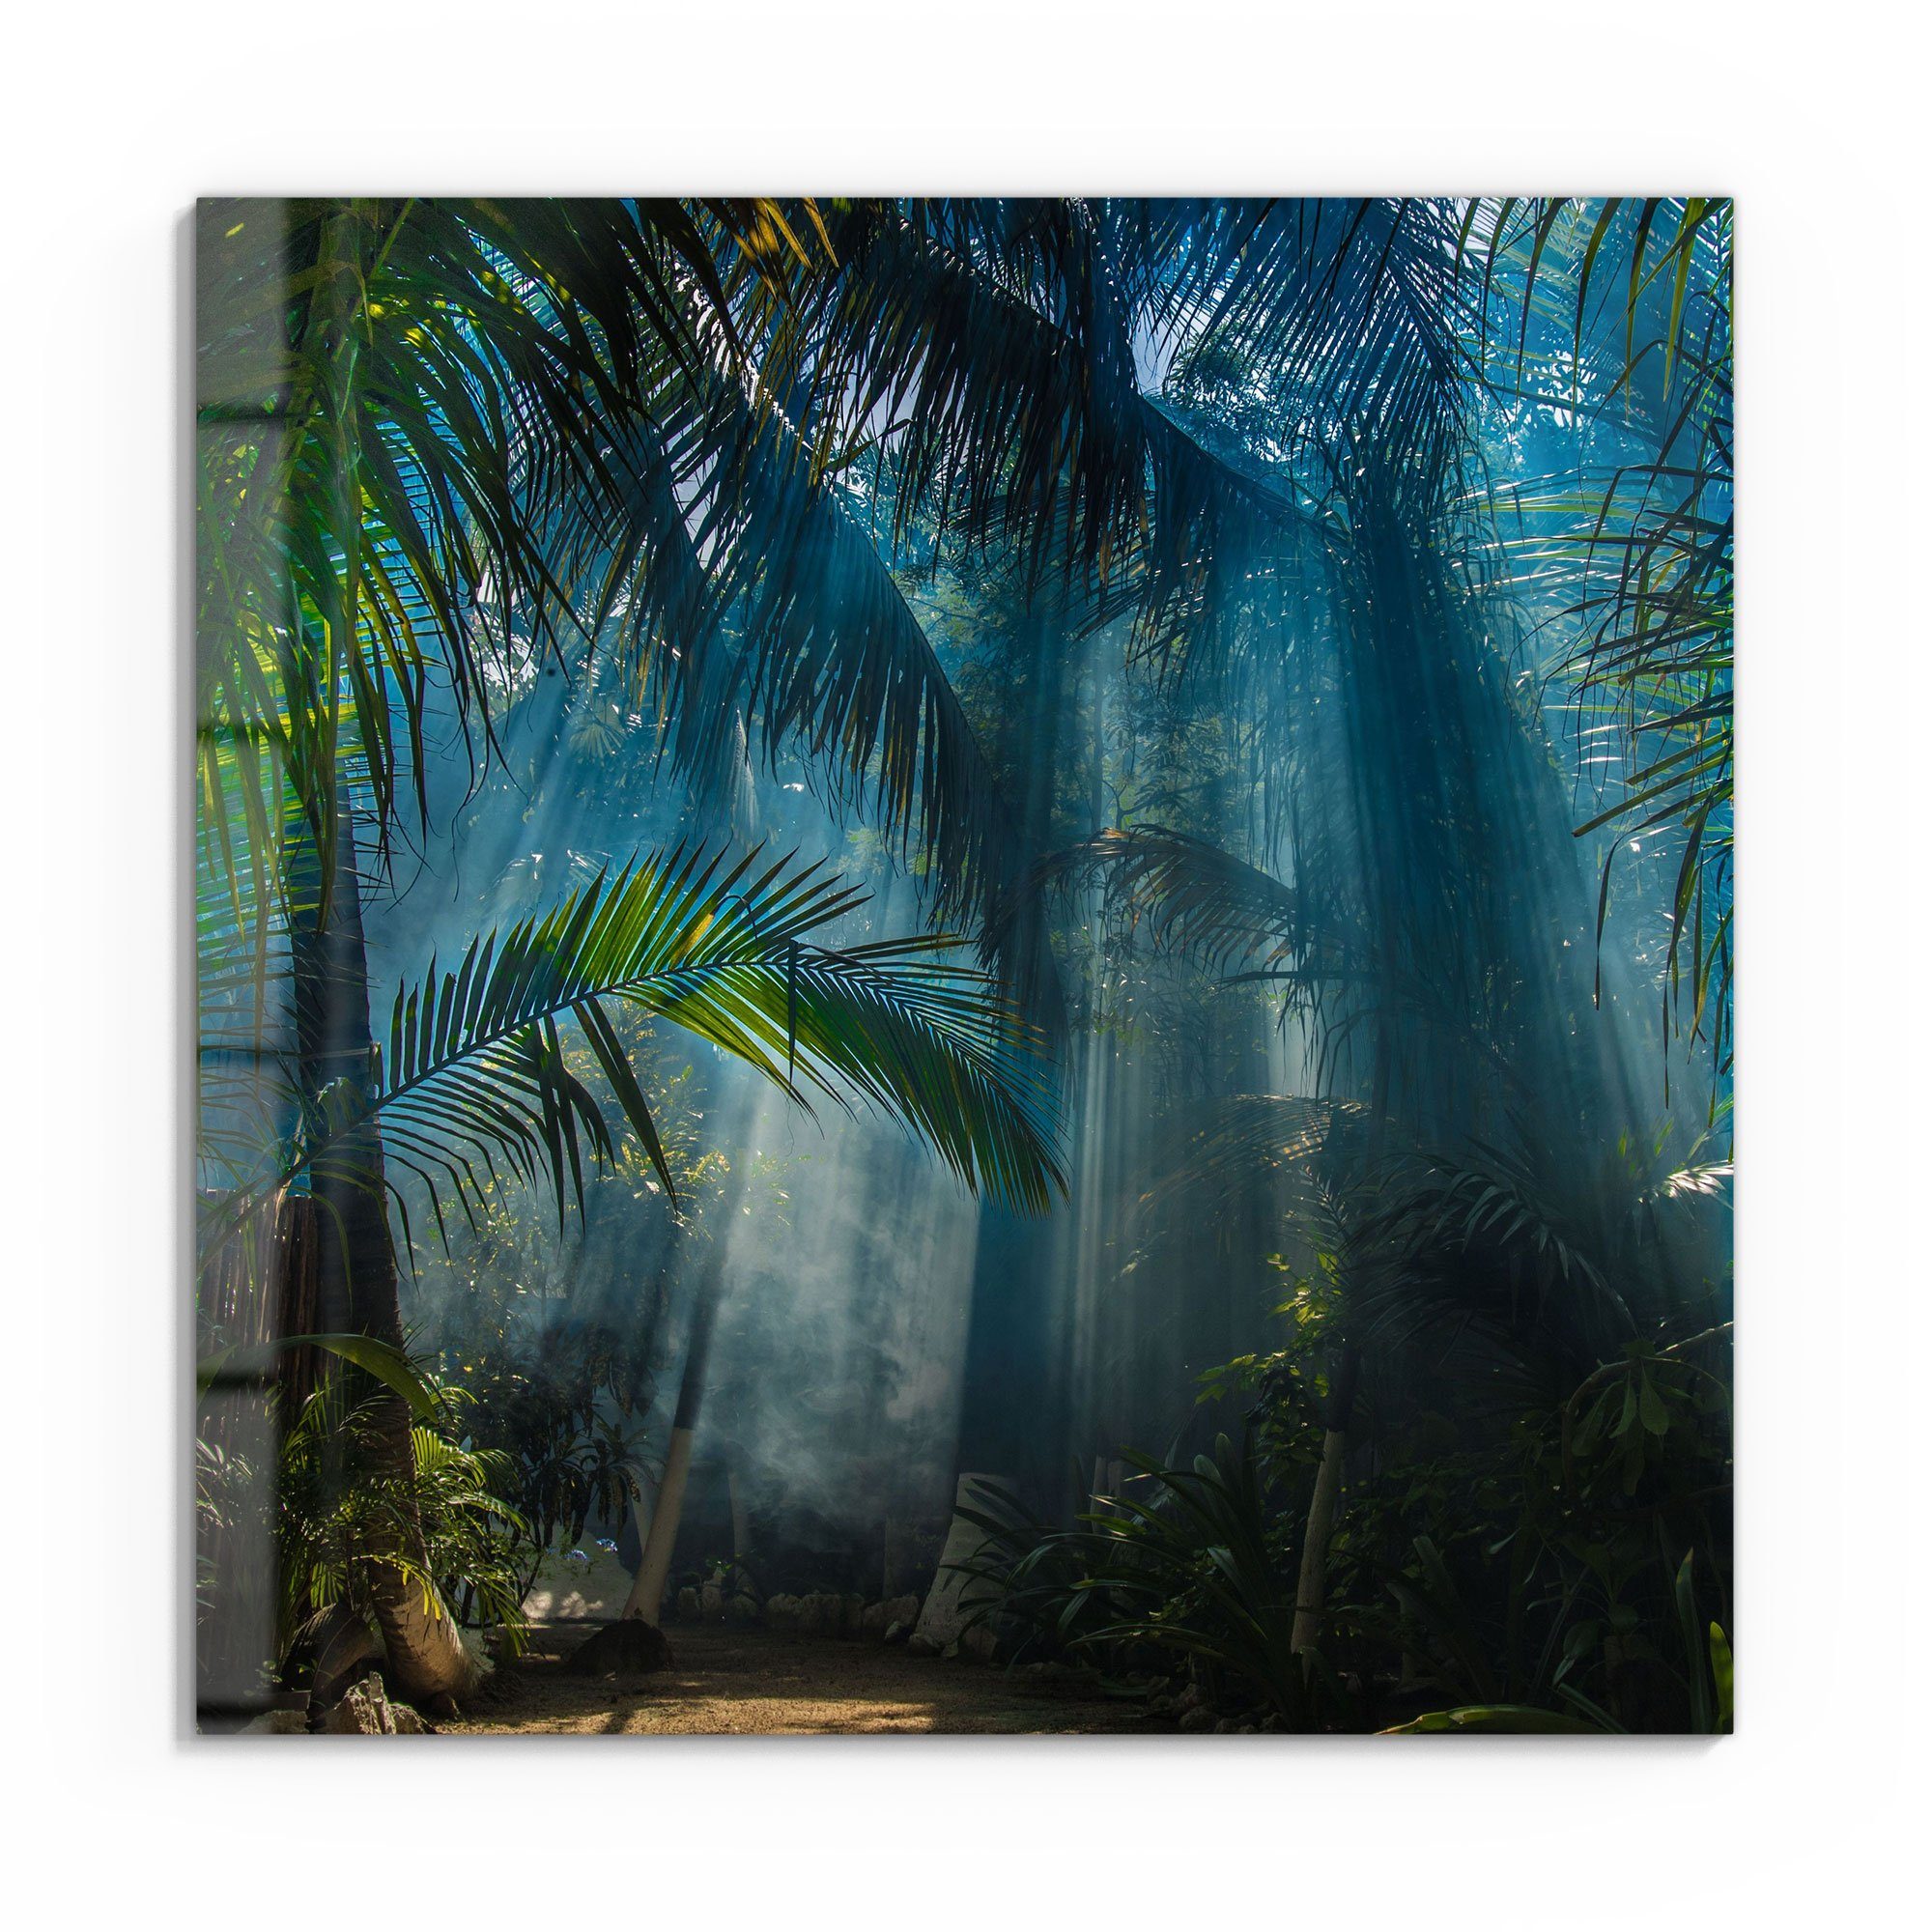 DEQORI Glasbild 'Licht durchdringt Palmen', 'Licht durchdringt Palmen',  Glas Wandbild Bild schwebend modern